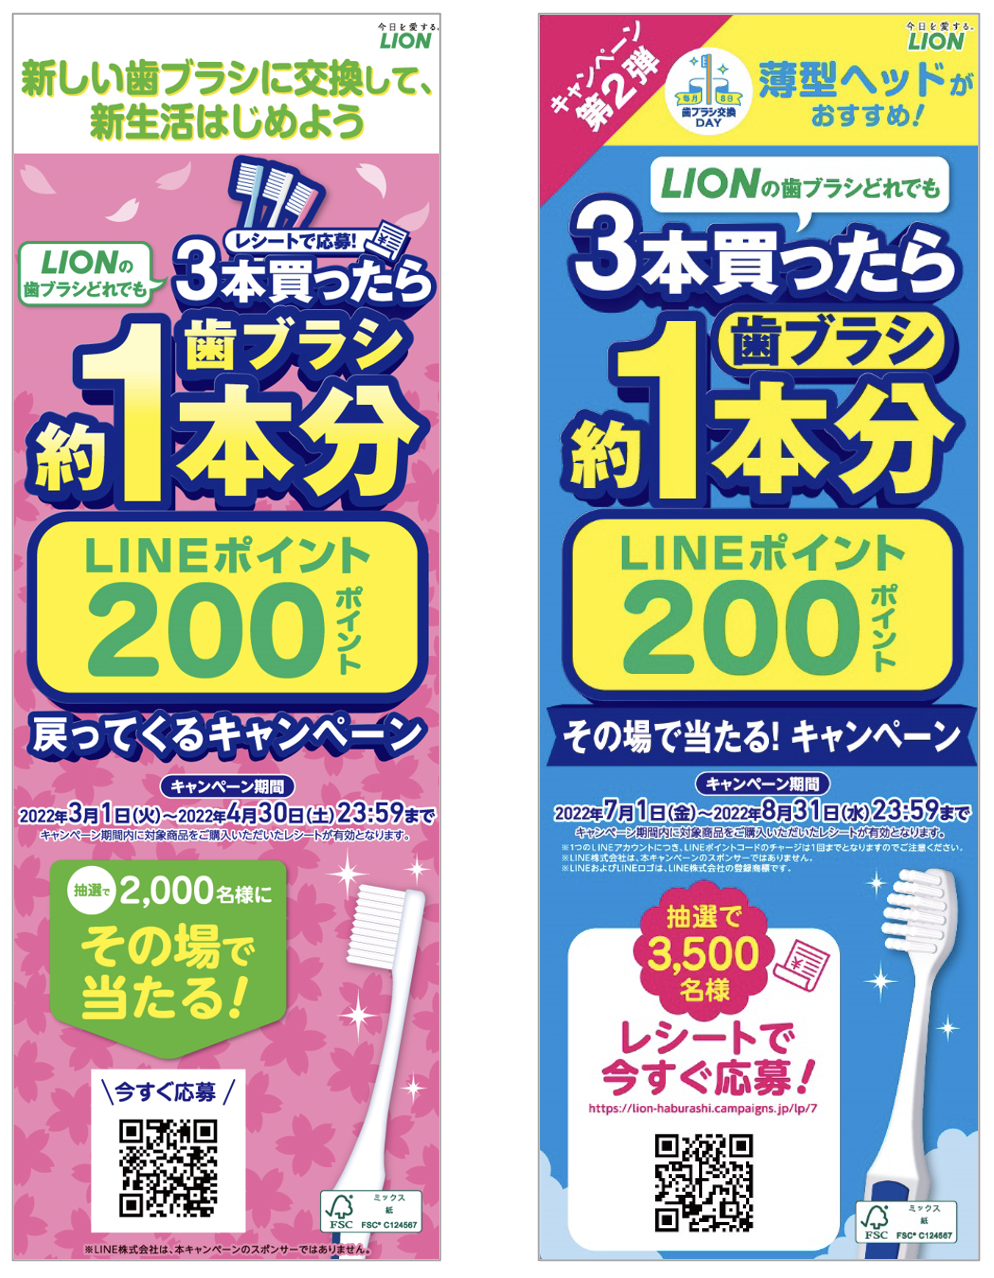 歯ブラシ交換キャンペーン／ライオン株式会社様